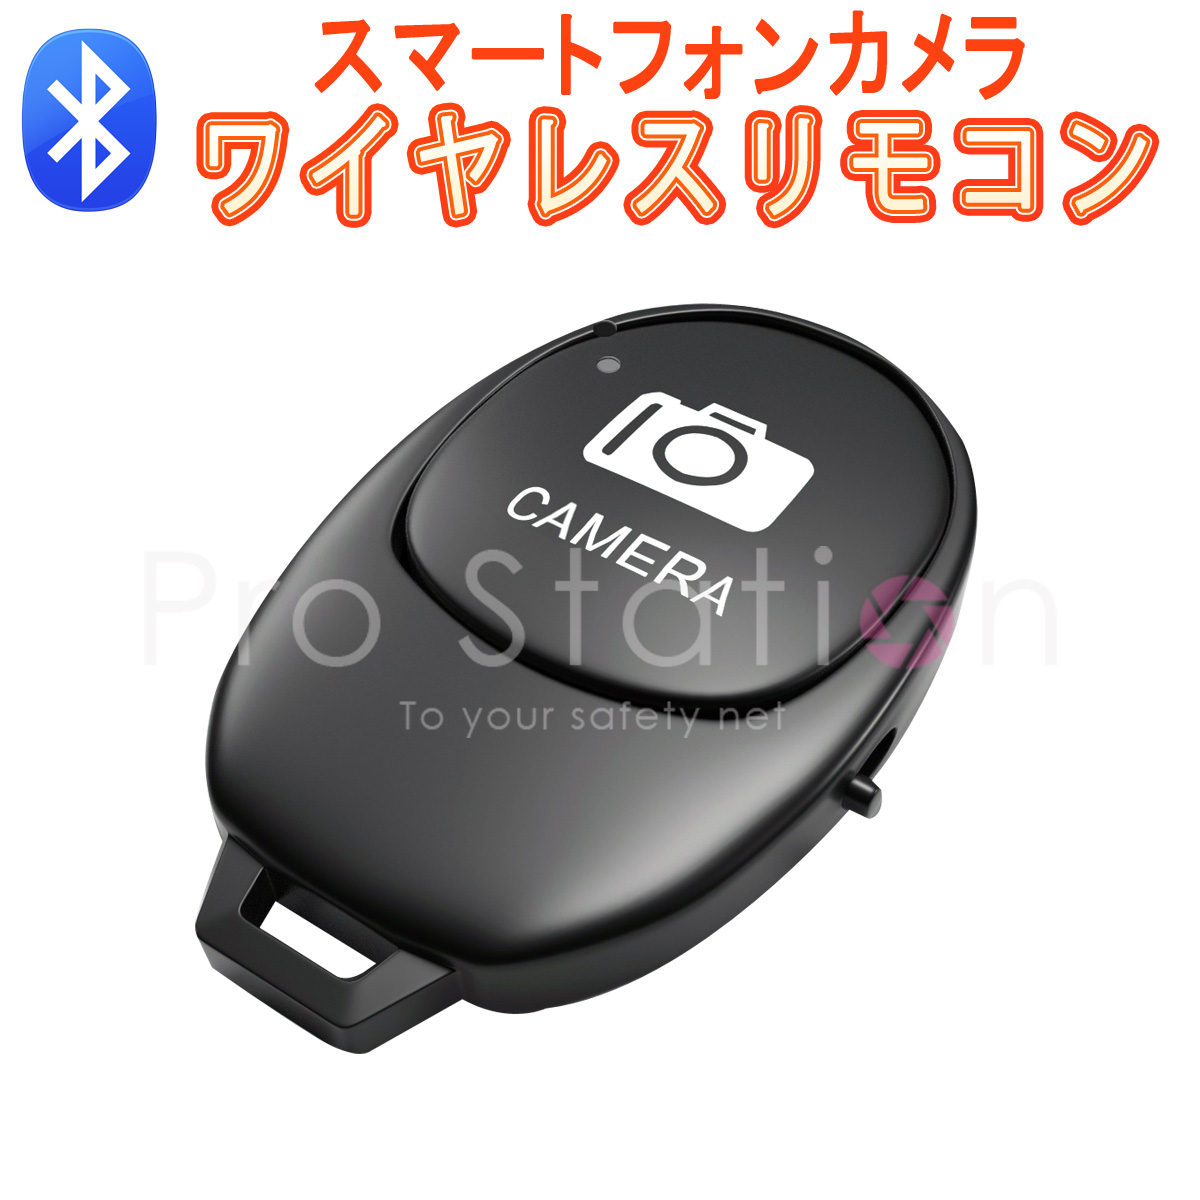 Bluetooth リモコンシャッター Bluetooth スマートフォン用 カメラリモコン ワイヤレス スマートフォン用カメラシャッター リモートコントロール カメラスティックシャッター 一脚 三脚 1ヶ月保証